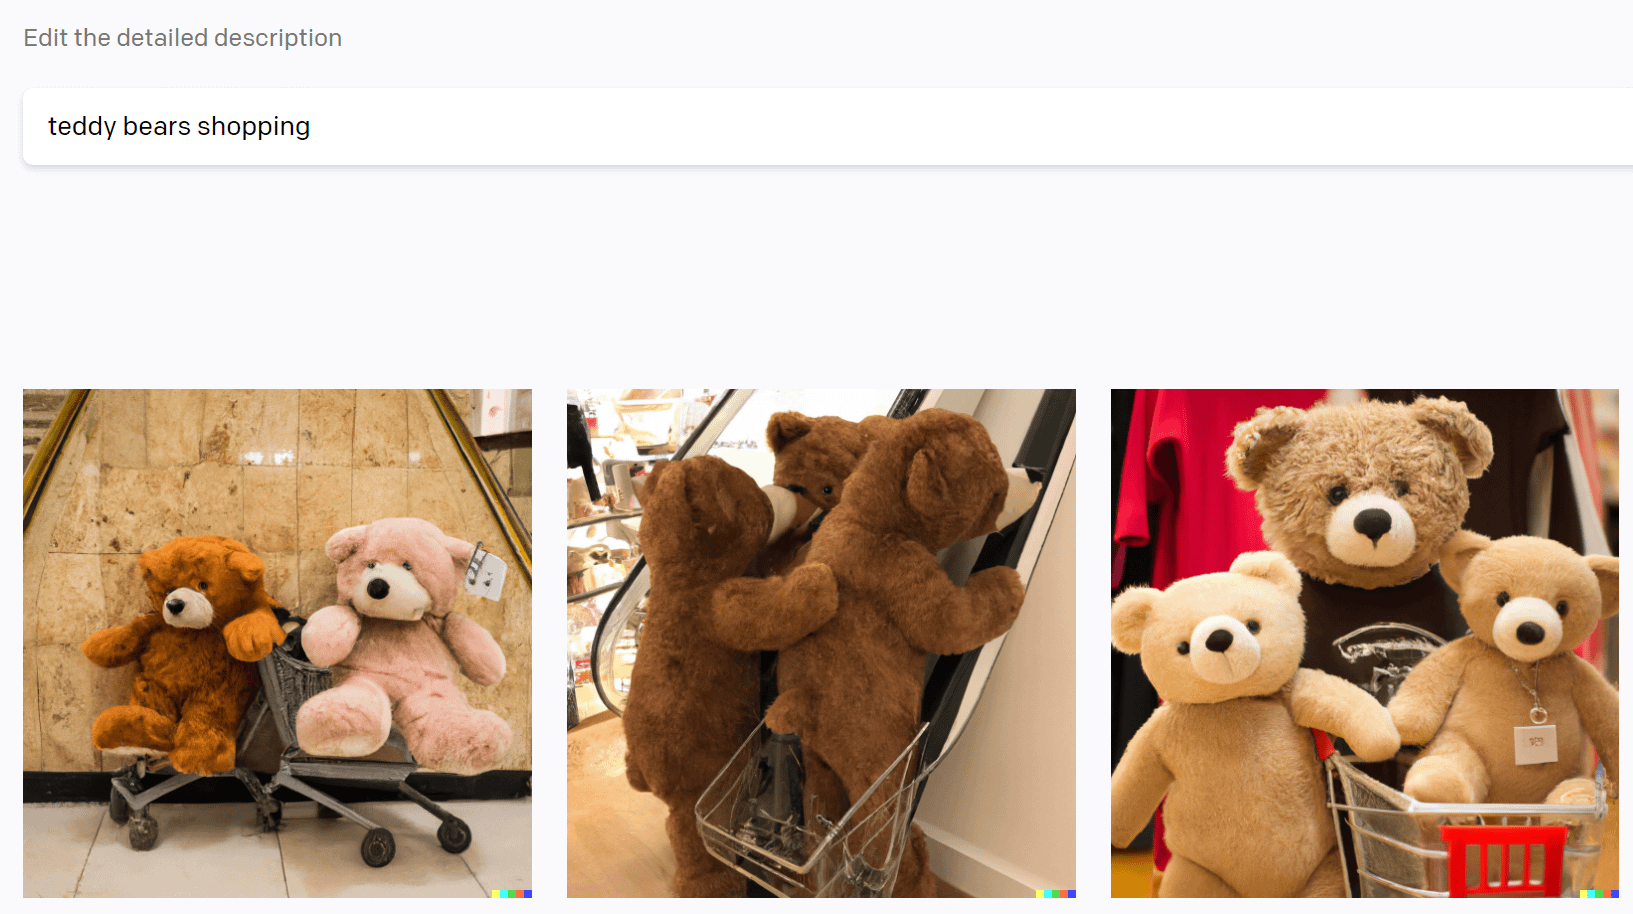 سه تصویر تولید شده توسط هوش مصنوعی که توسط فرمان تولید شده است "خرید خرس های عروسکی".